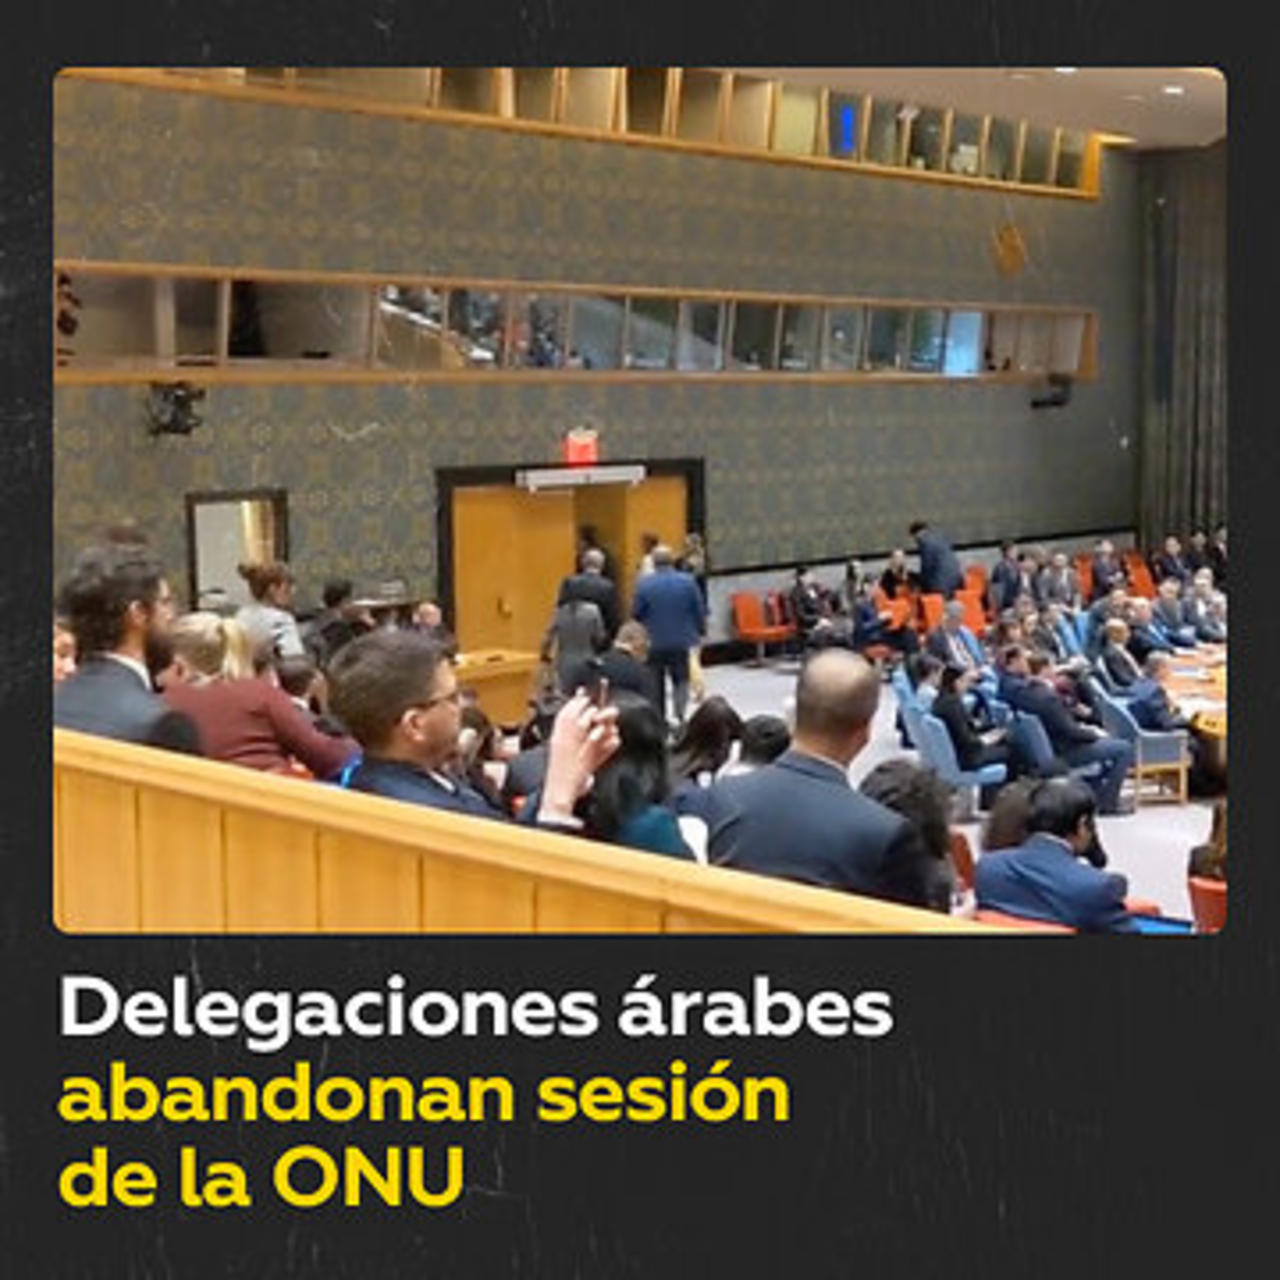 Representantes árabes abandonan la sala durante el discurso de Israel en la ONU